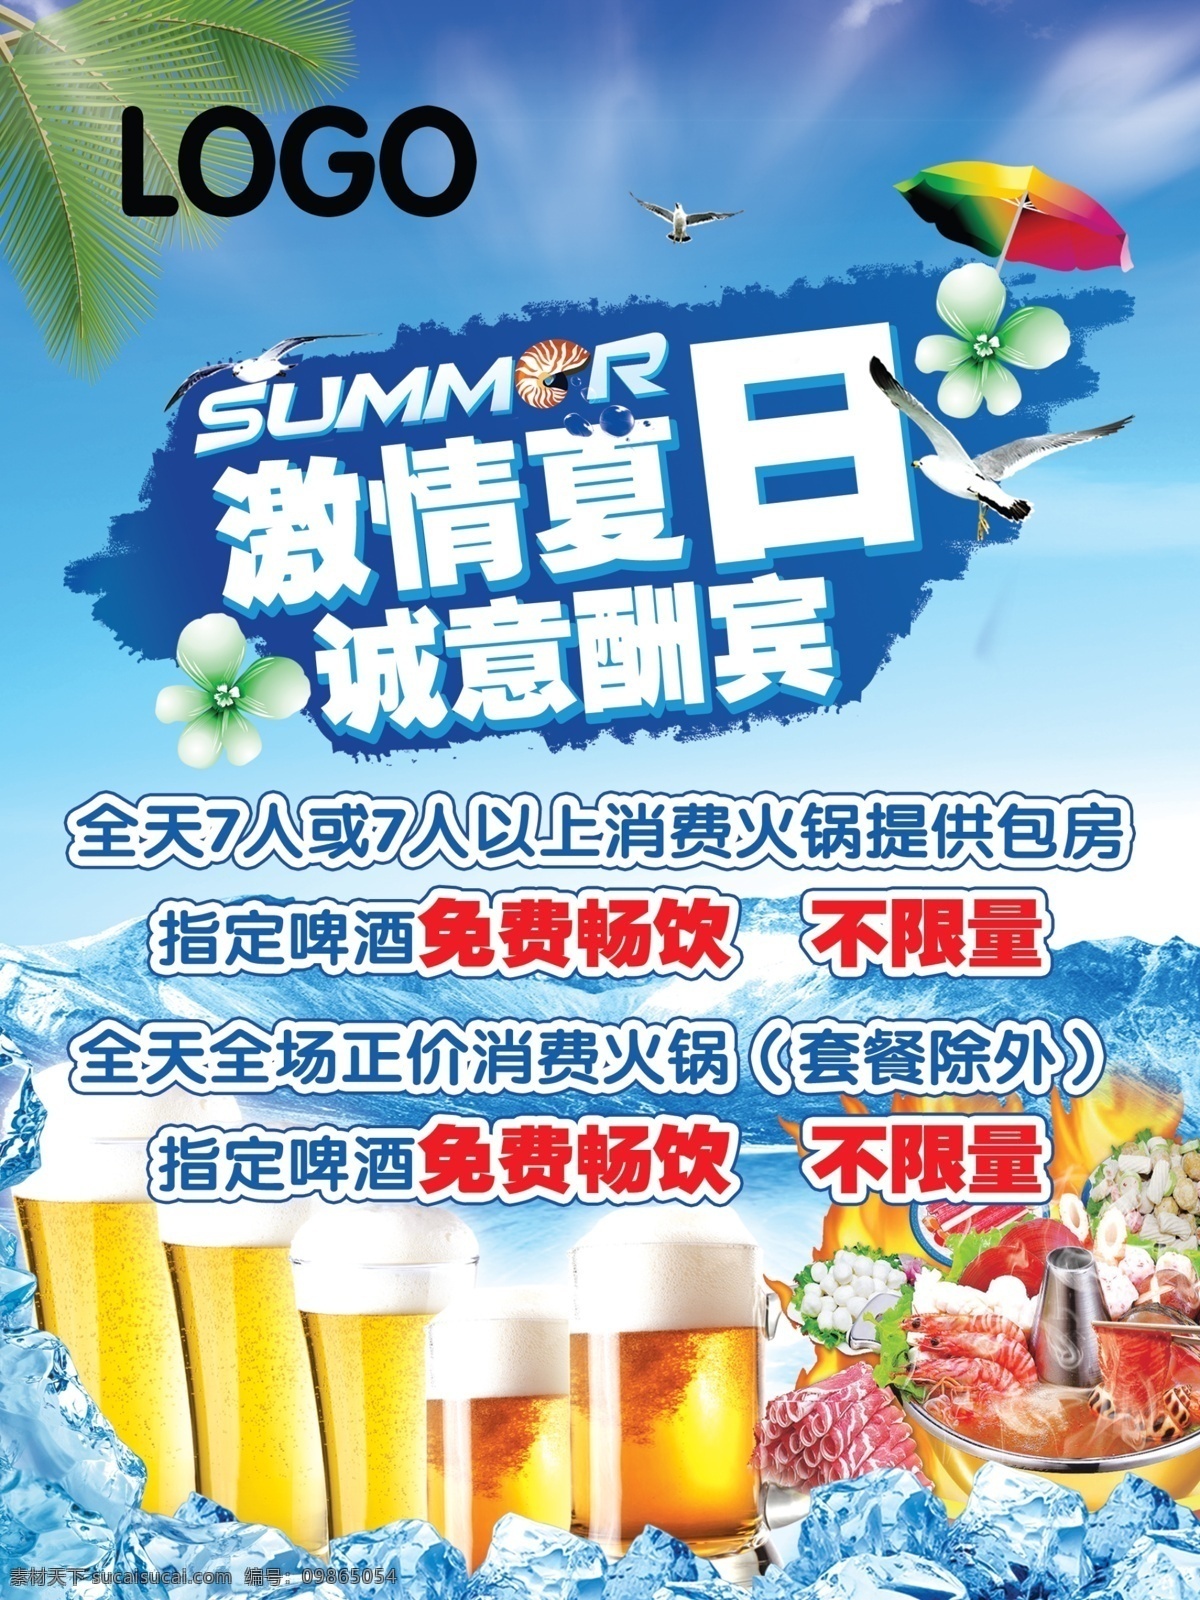 夏日活动 夏日 啤酒 火锅活动 激情夏日 诚意酬宾 冰块 广告设计模板 源文件